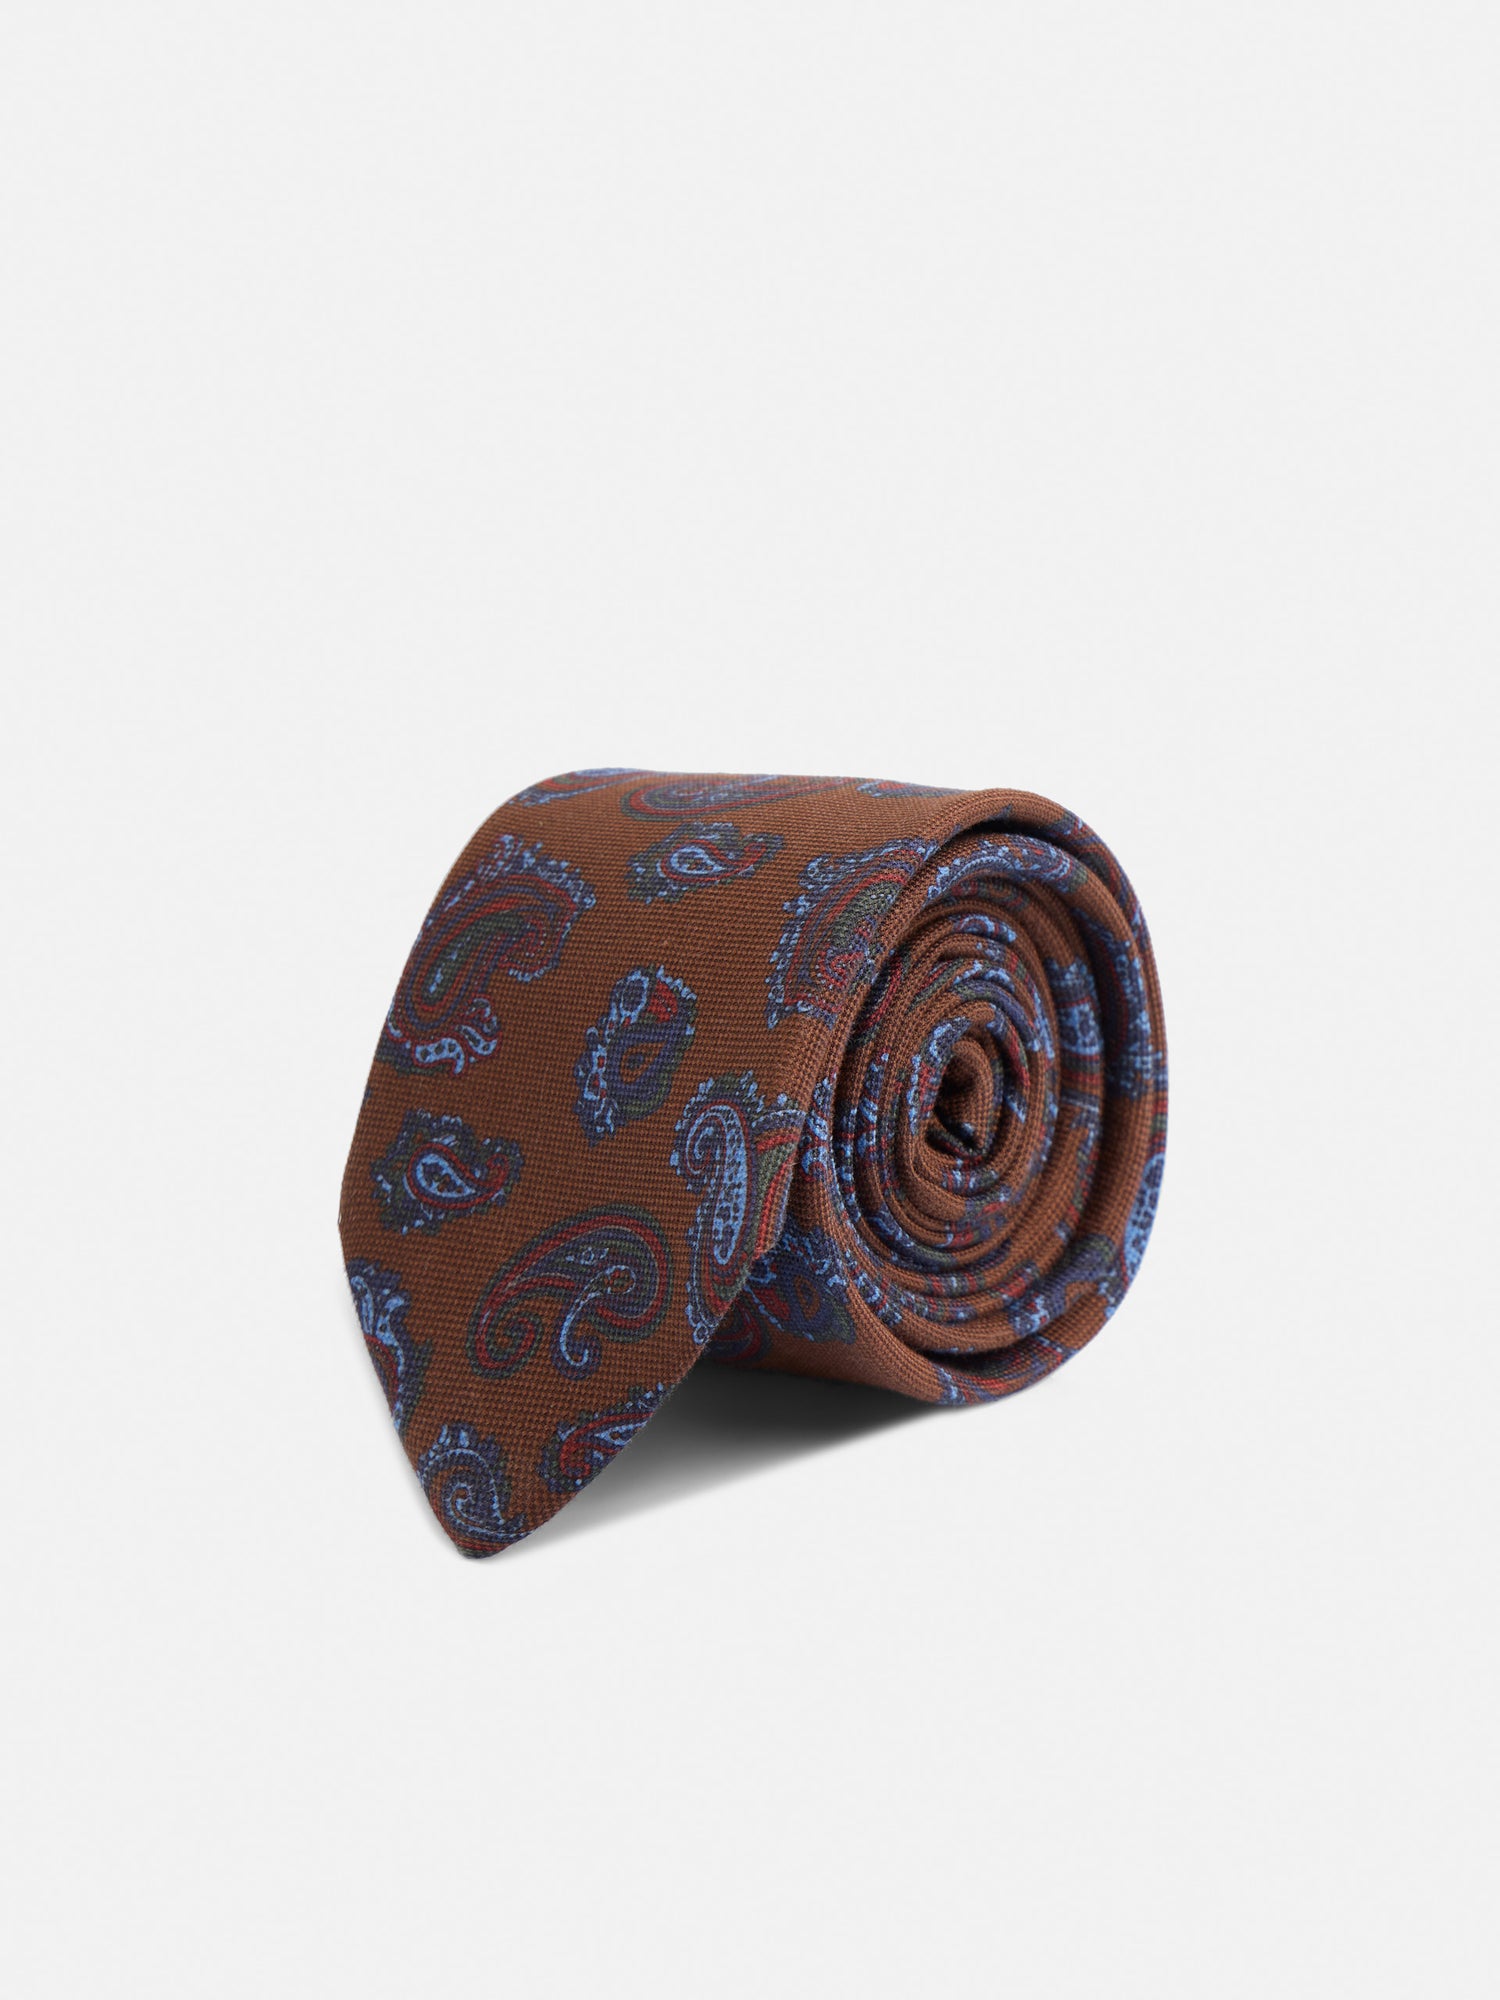 Brown paisley printed tie